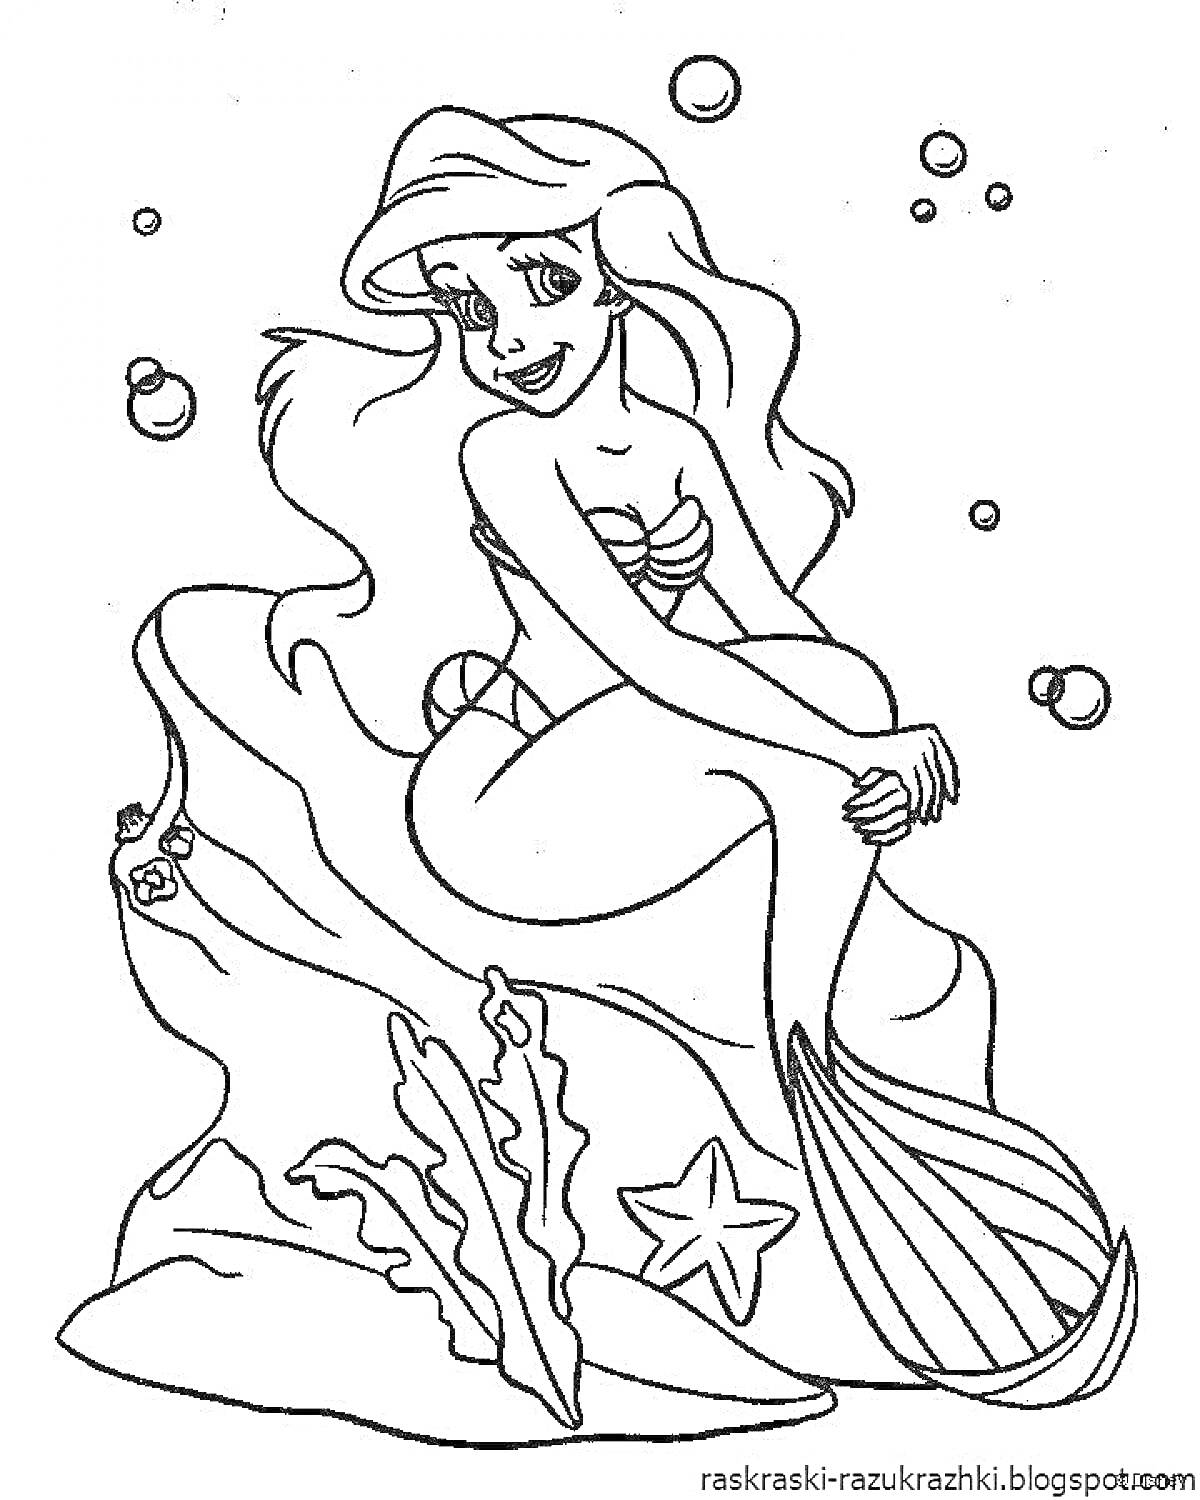 Раскраска Русалочка сидит на камне с морской звездой, водорослями и пузырьками воздуха